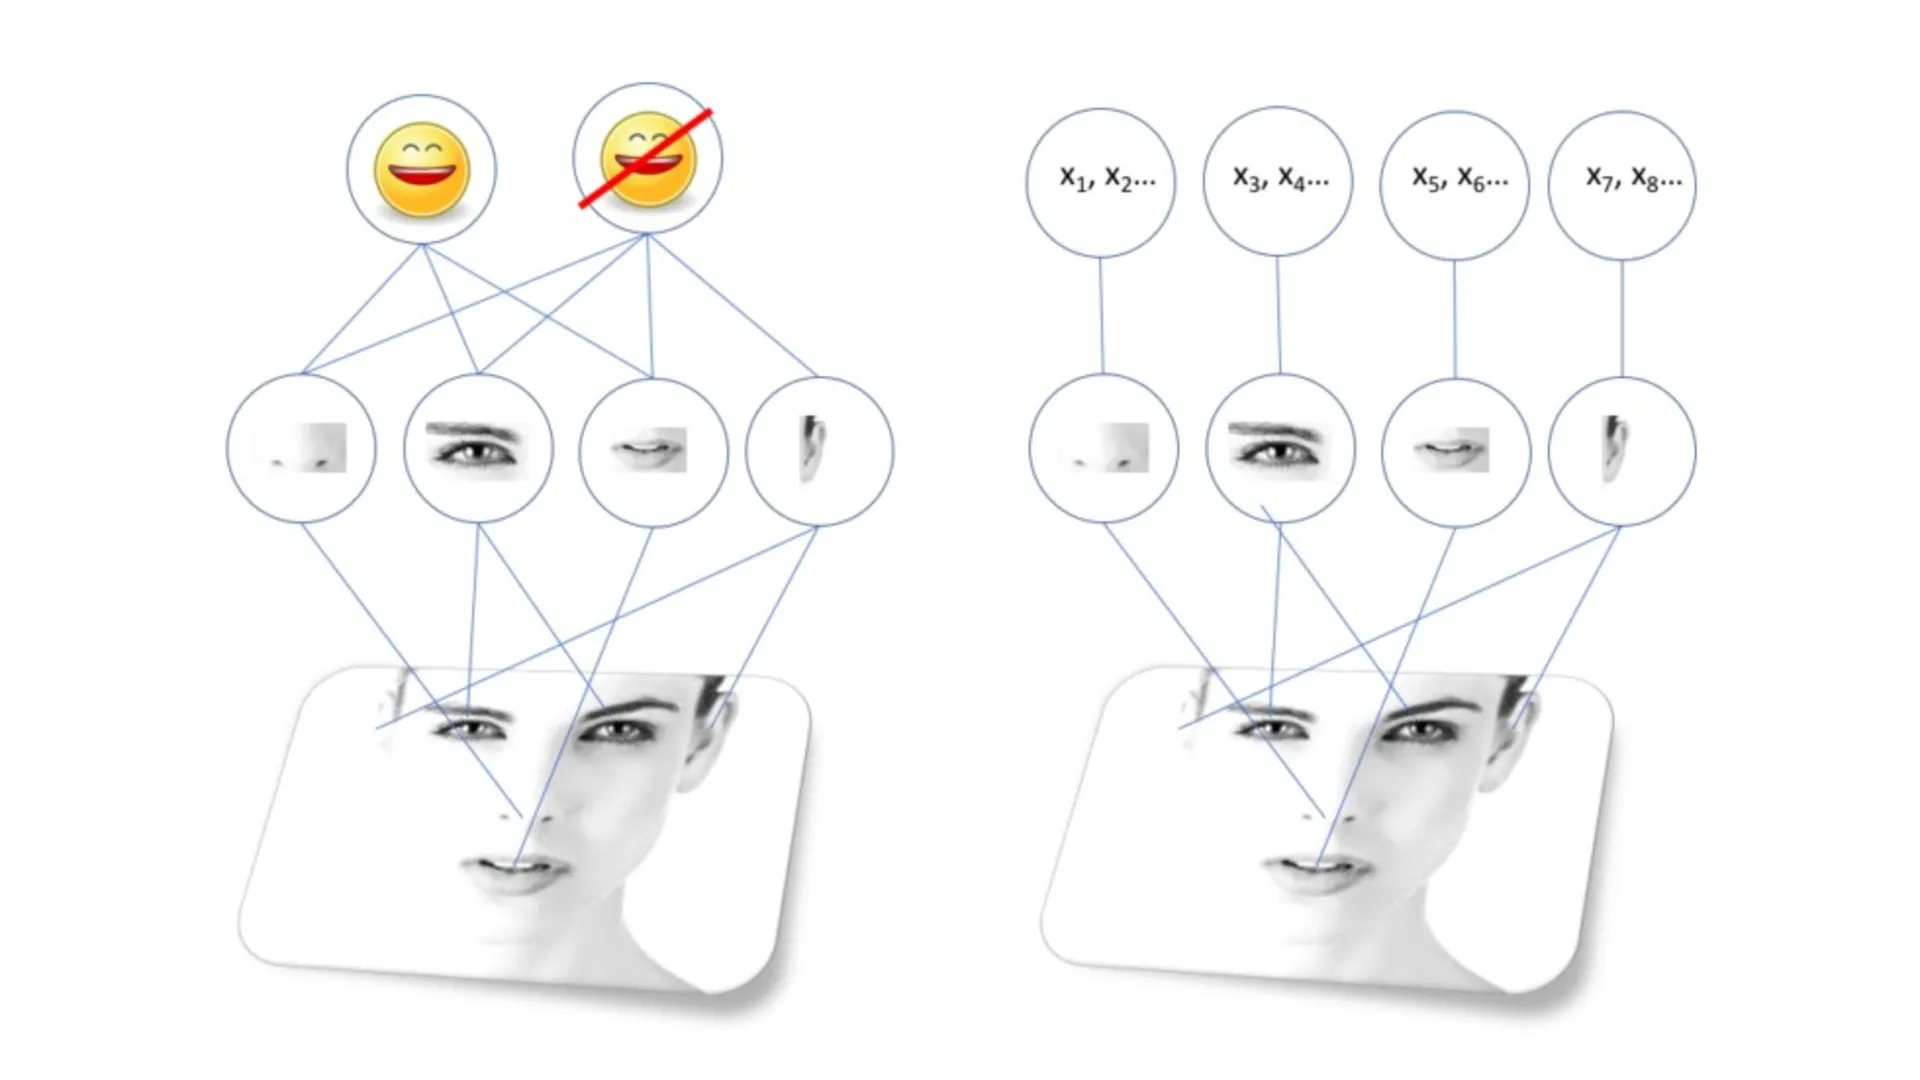 مدل هوش مصنوعی برای تشخیص چهره